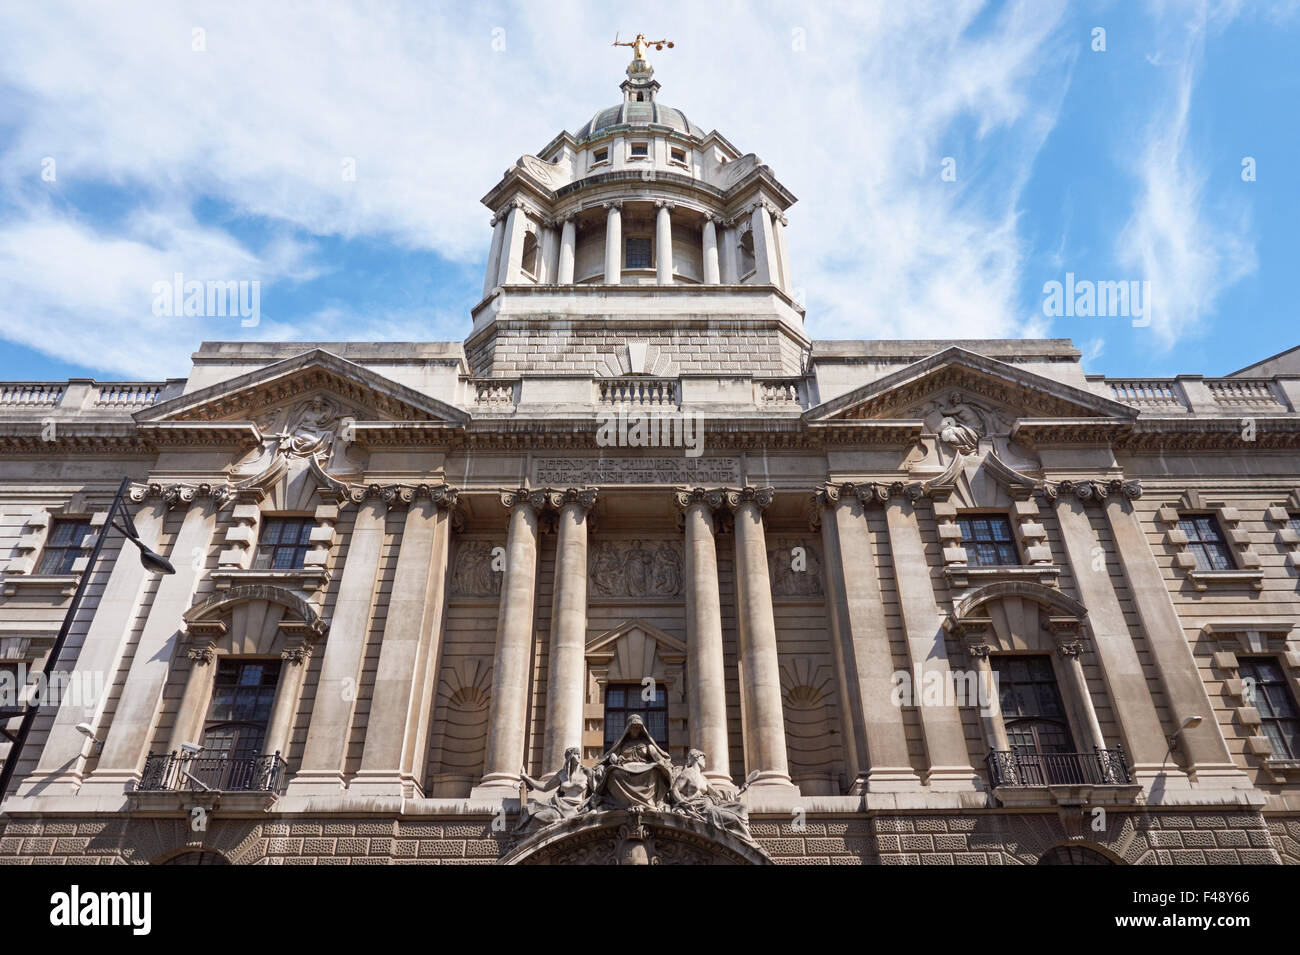 L'Old Bailey, la Cour Criminelle Centrale d'Angleterre et du Pays de Galles, Londres Angleterre Royaume-Uni UK Banque D'Images